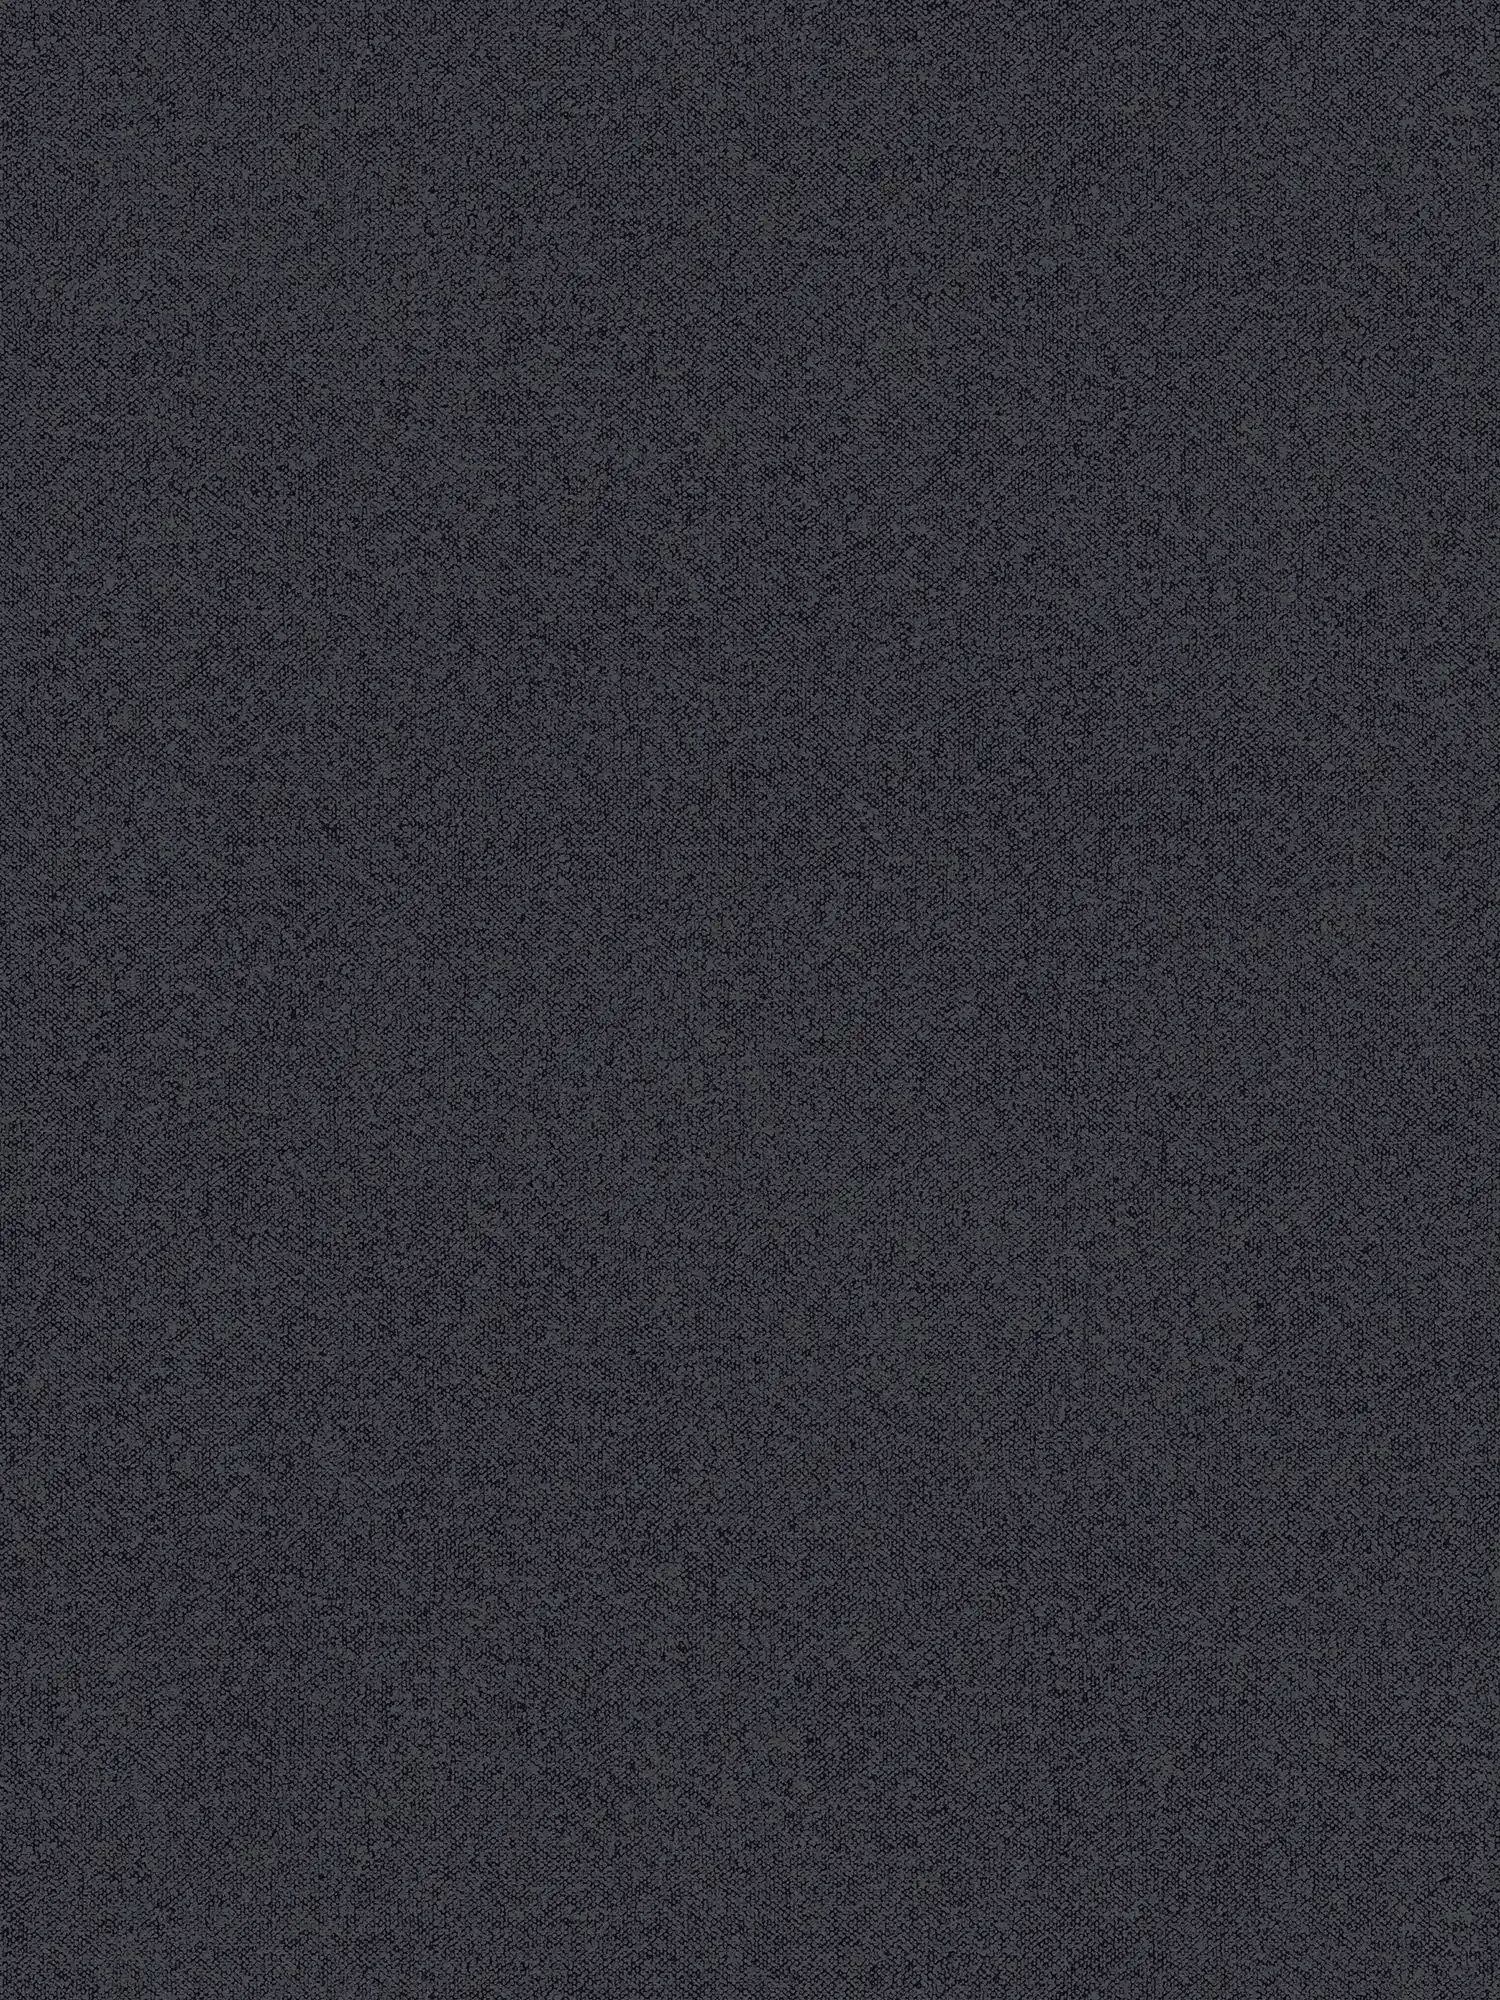 Papier peint structuré uni aspect lin - noir, gris
